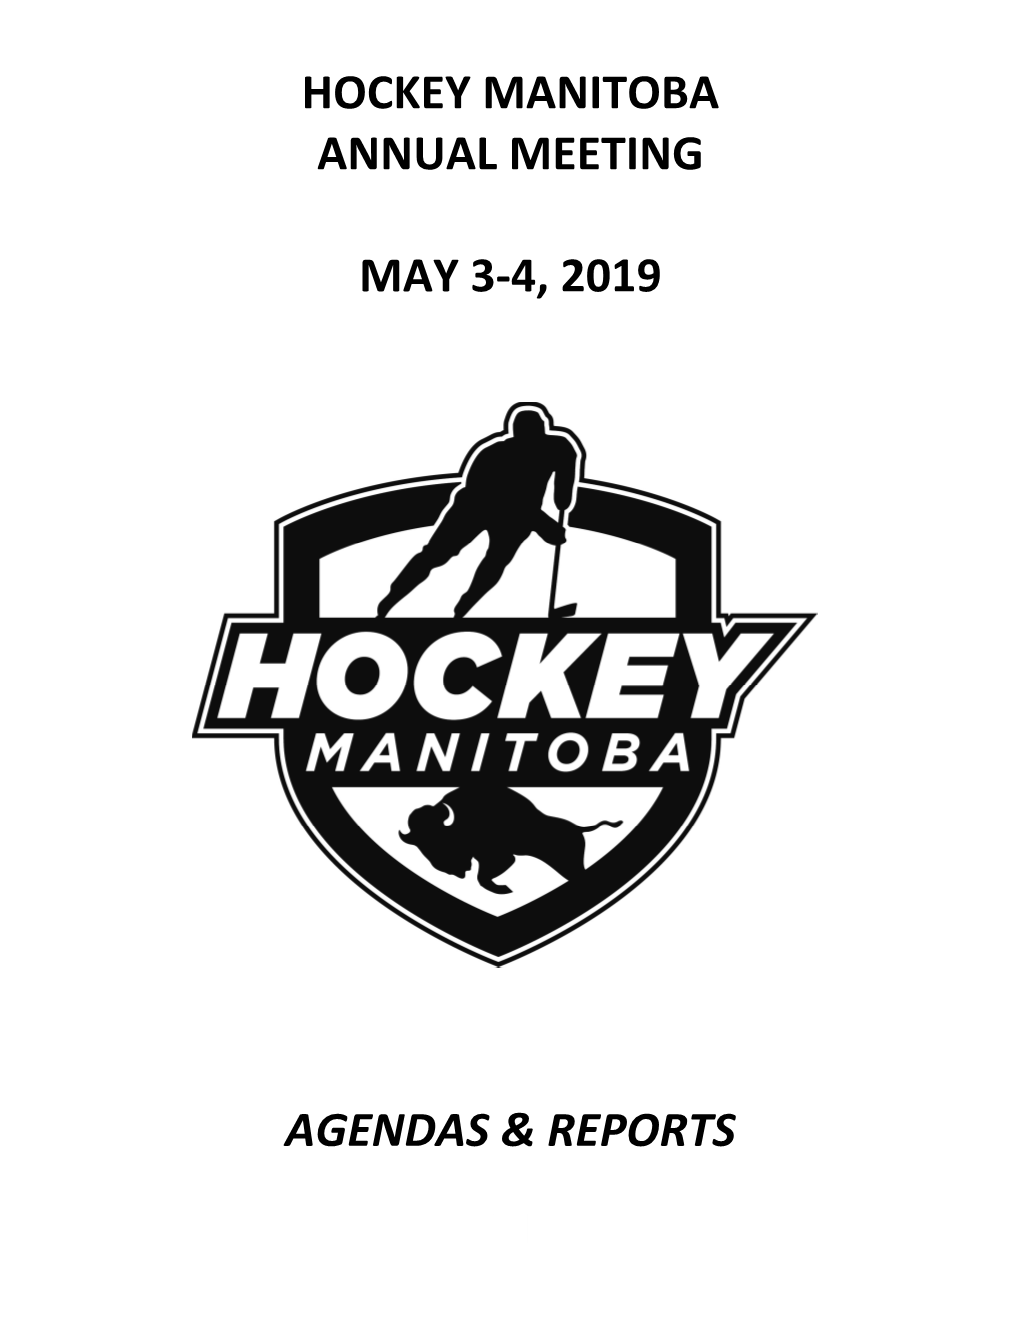 Hockey Manitoba Annual Meeting May 3-4, 2019